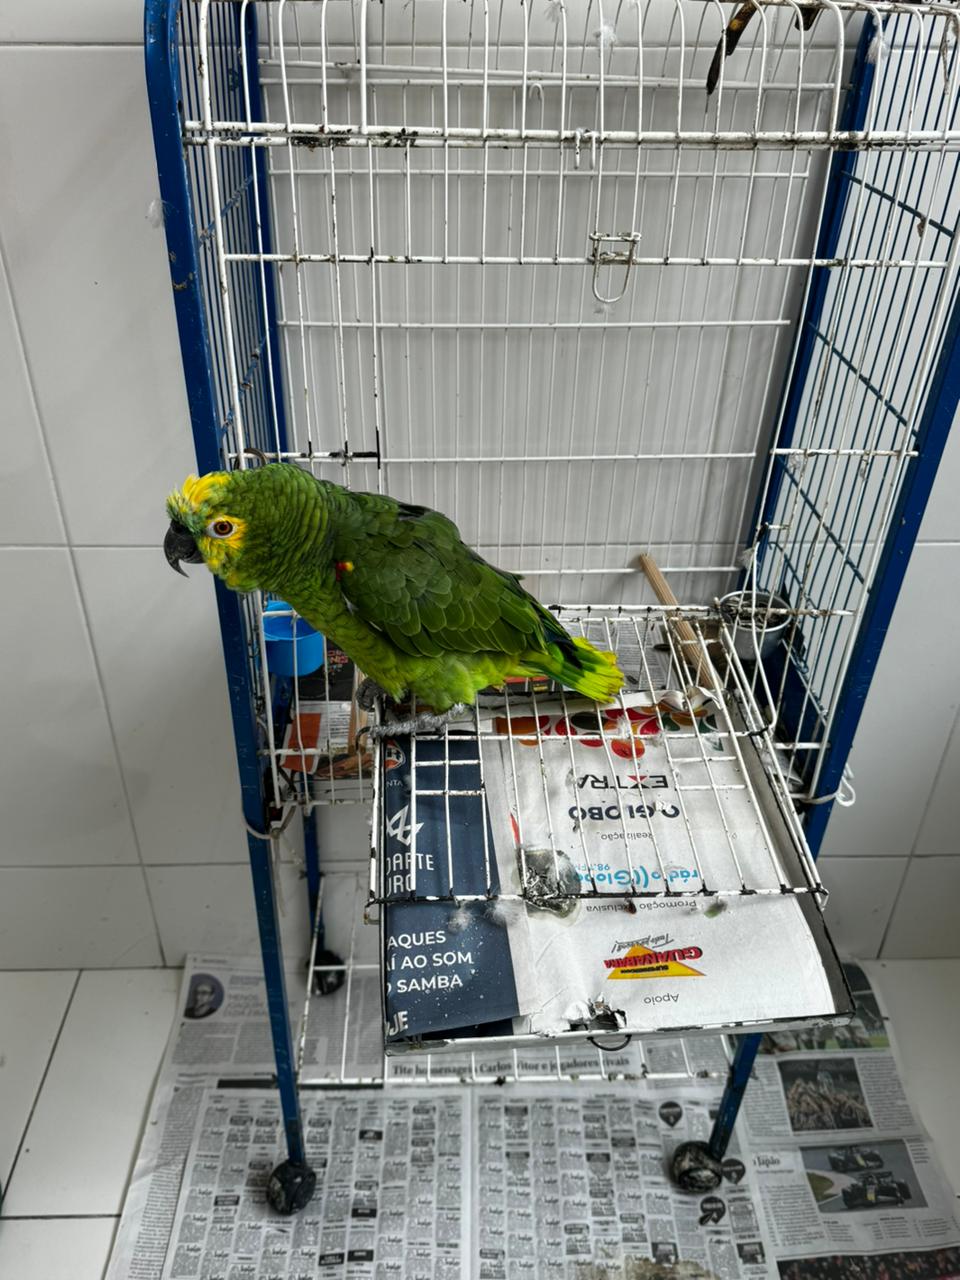 Polícia encontra papagaio em cativeiro após fiscalização em Niterói